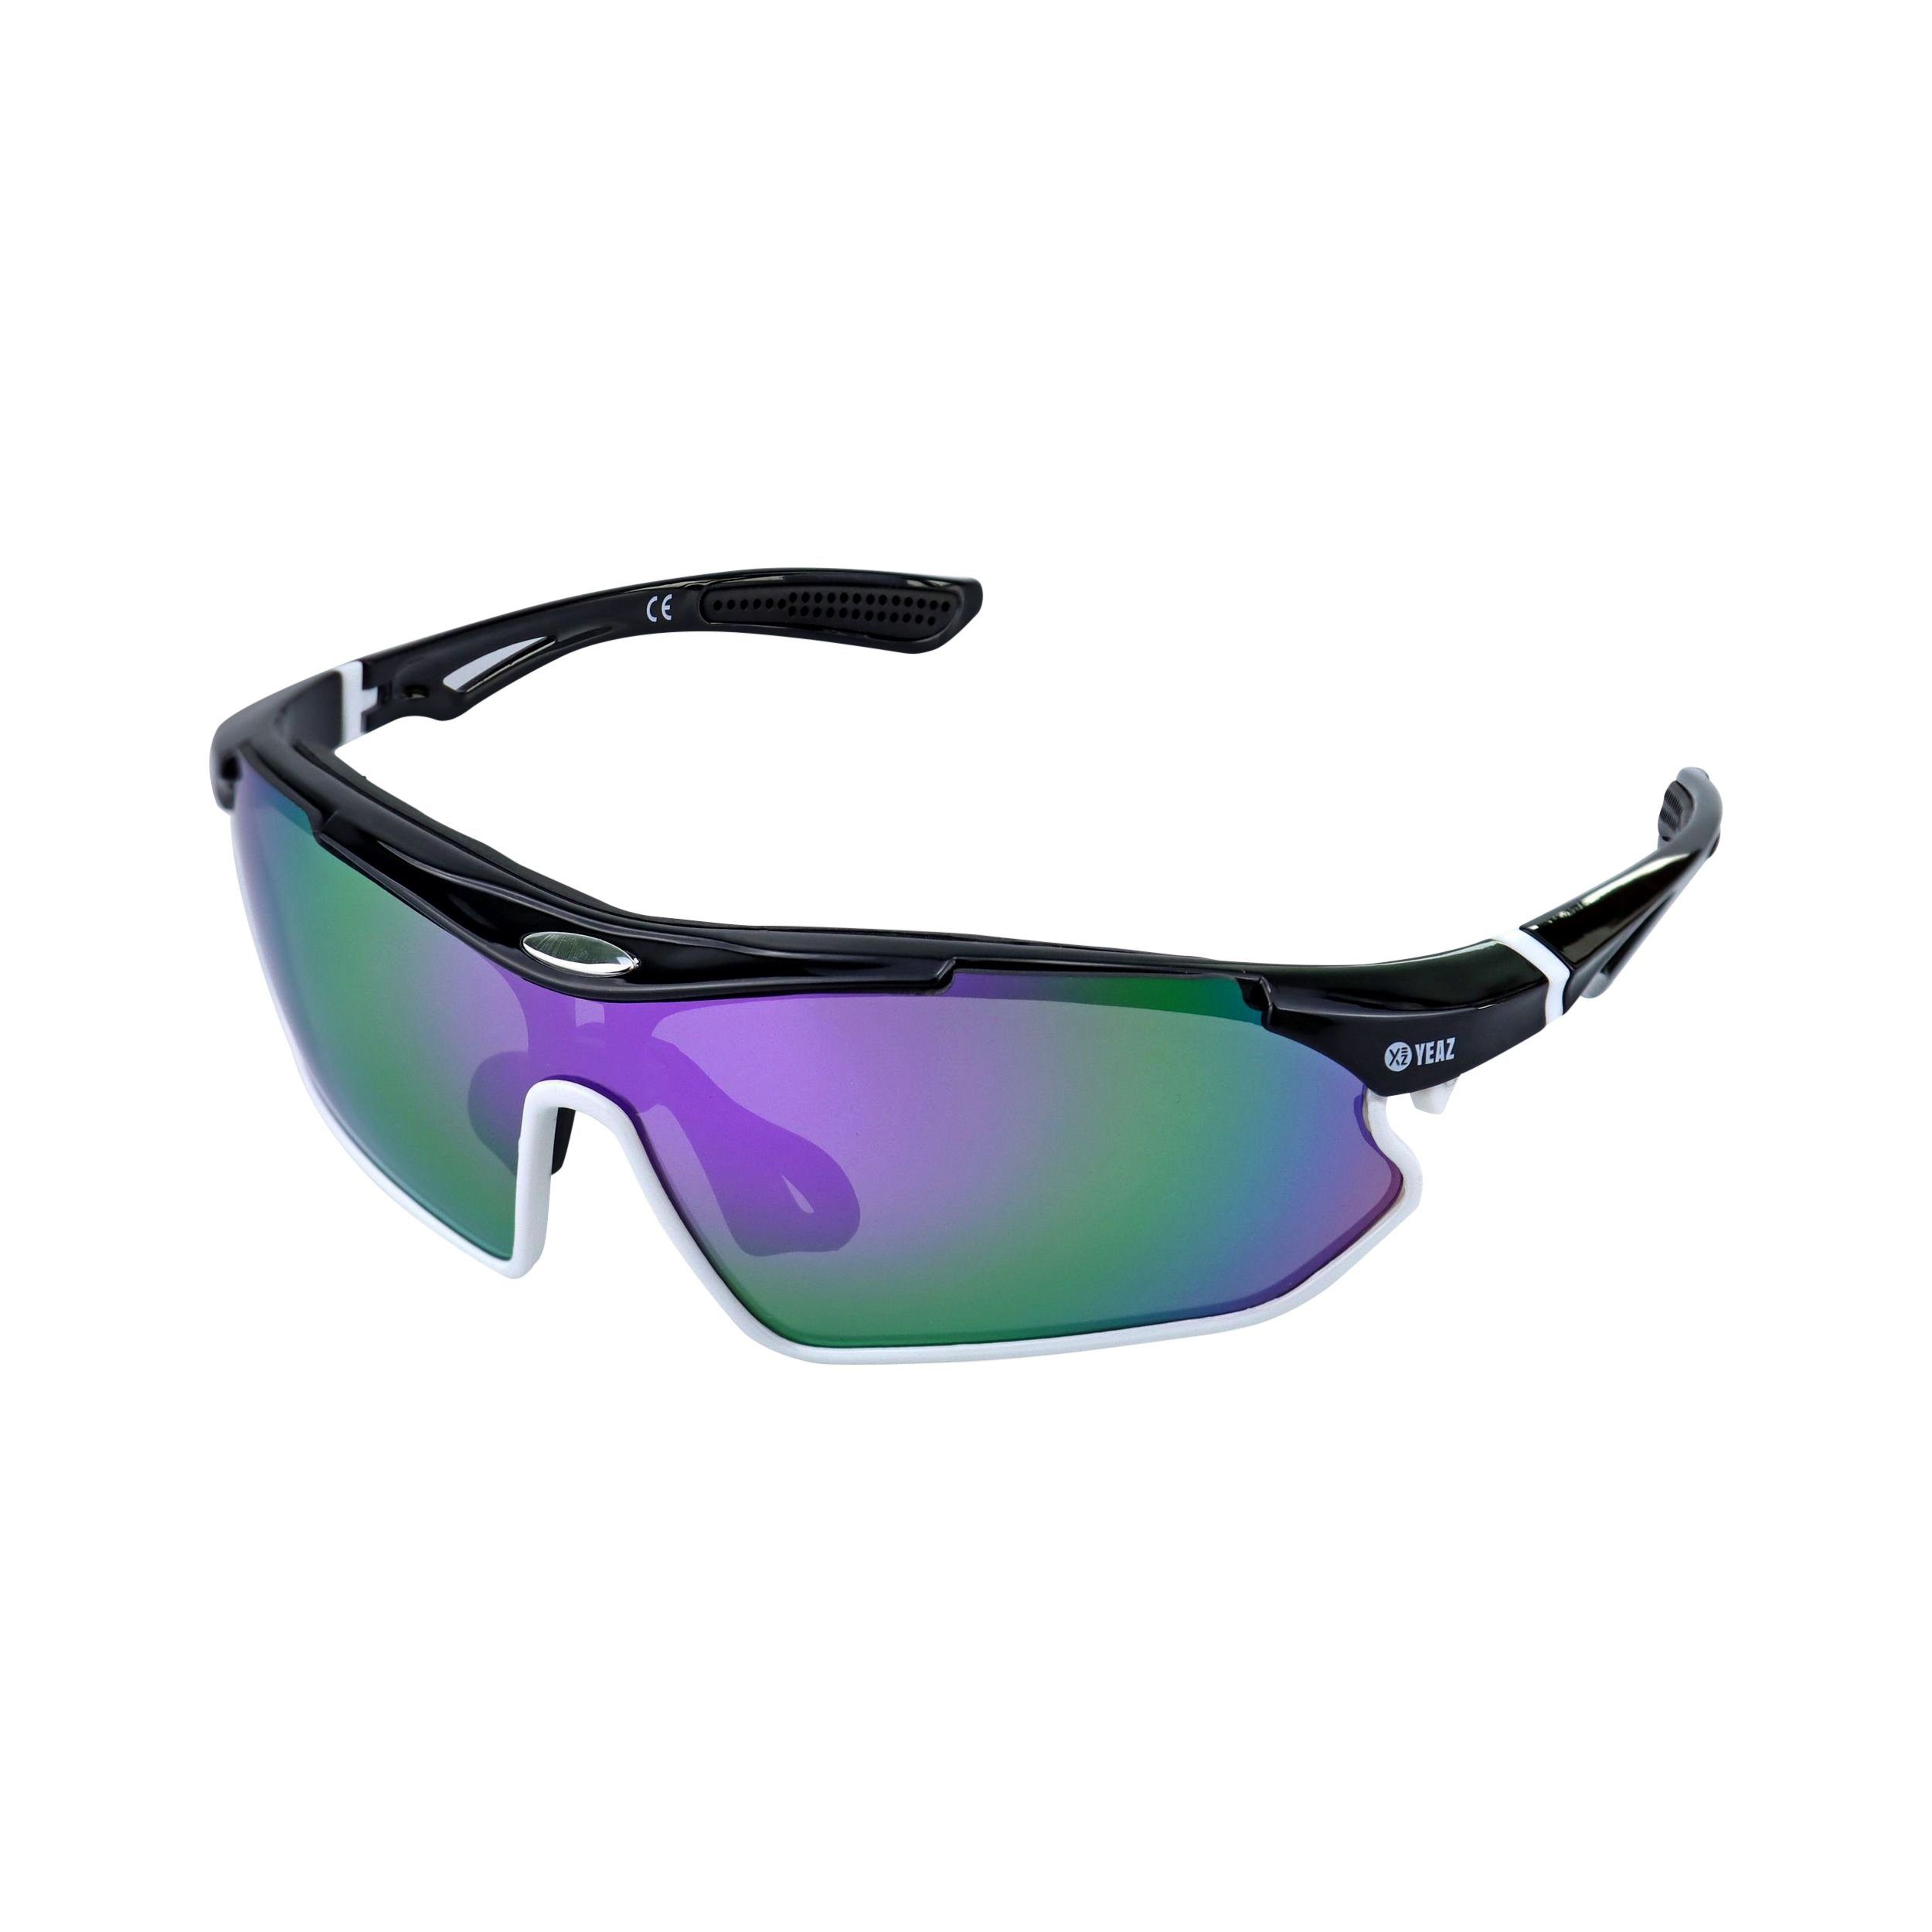 YEAZ Sportbrille SUNRAY sport-sonnenbrille schwarz/weiß/lila, schwarz/weiß/lila Sport-Sonnenbrille